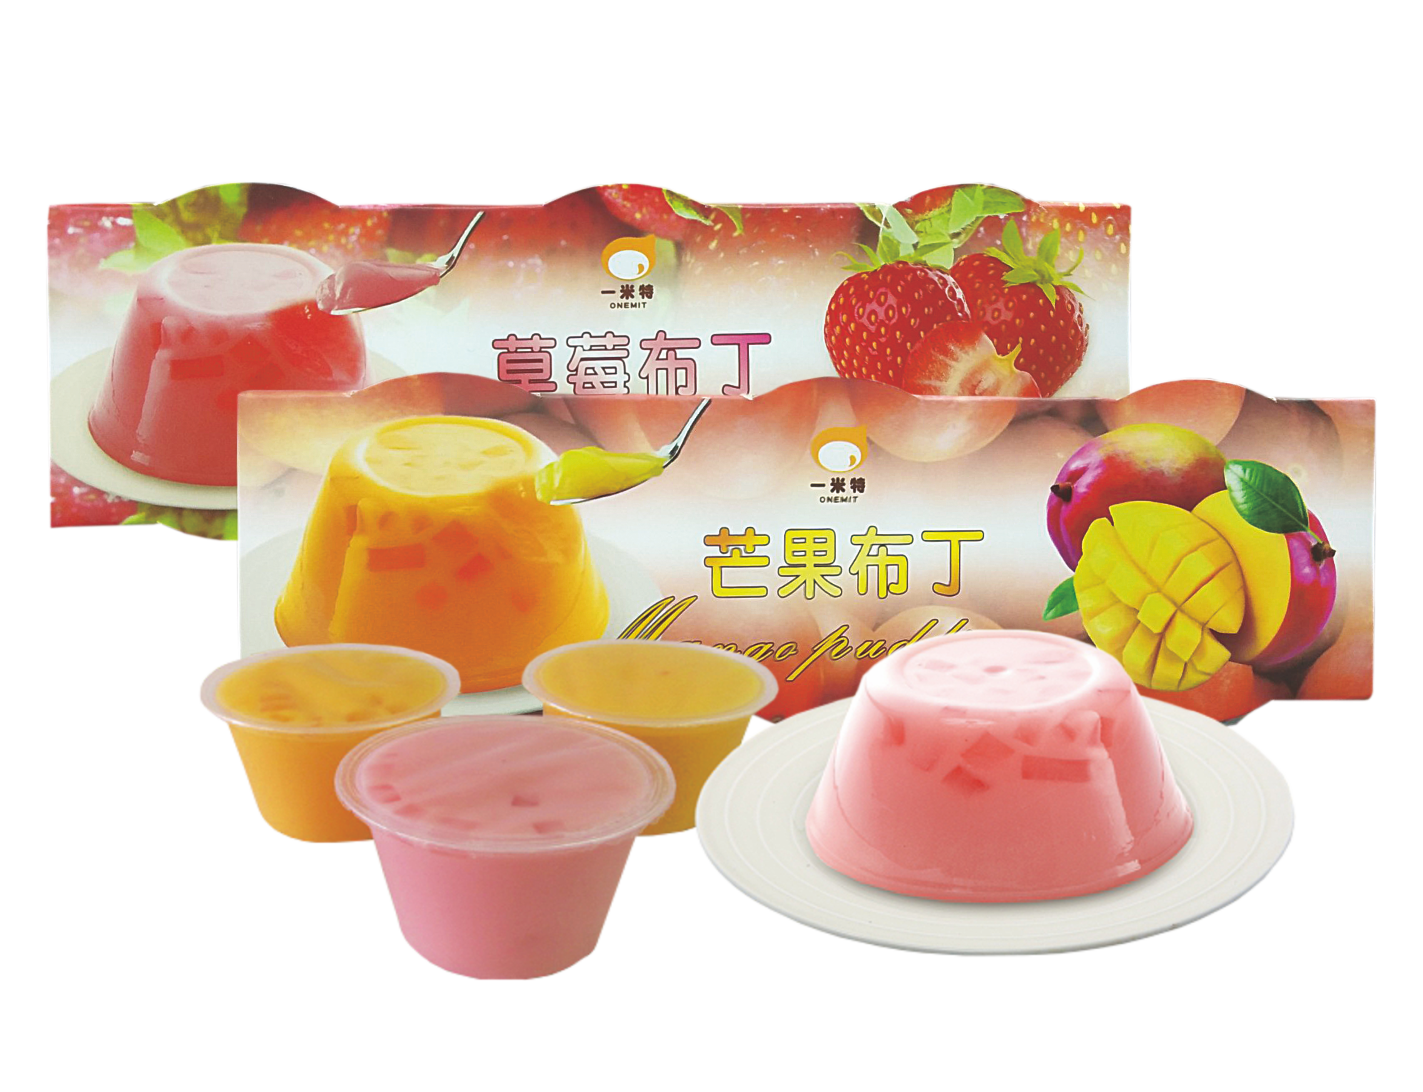 水果布丁<br>Fruit Pudding  |產品資訊|果凍/布丁|布丁-常溫